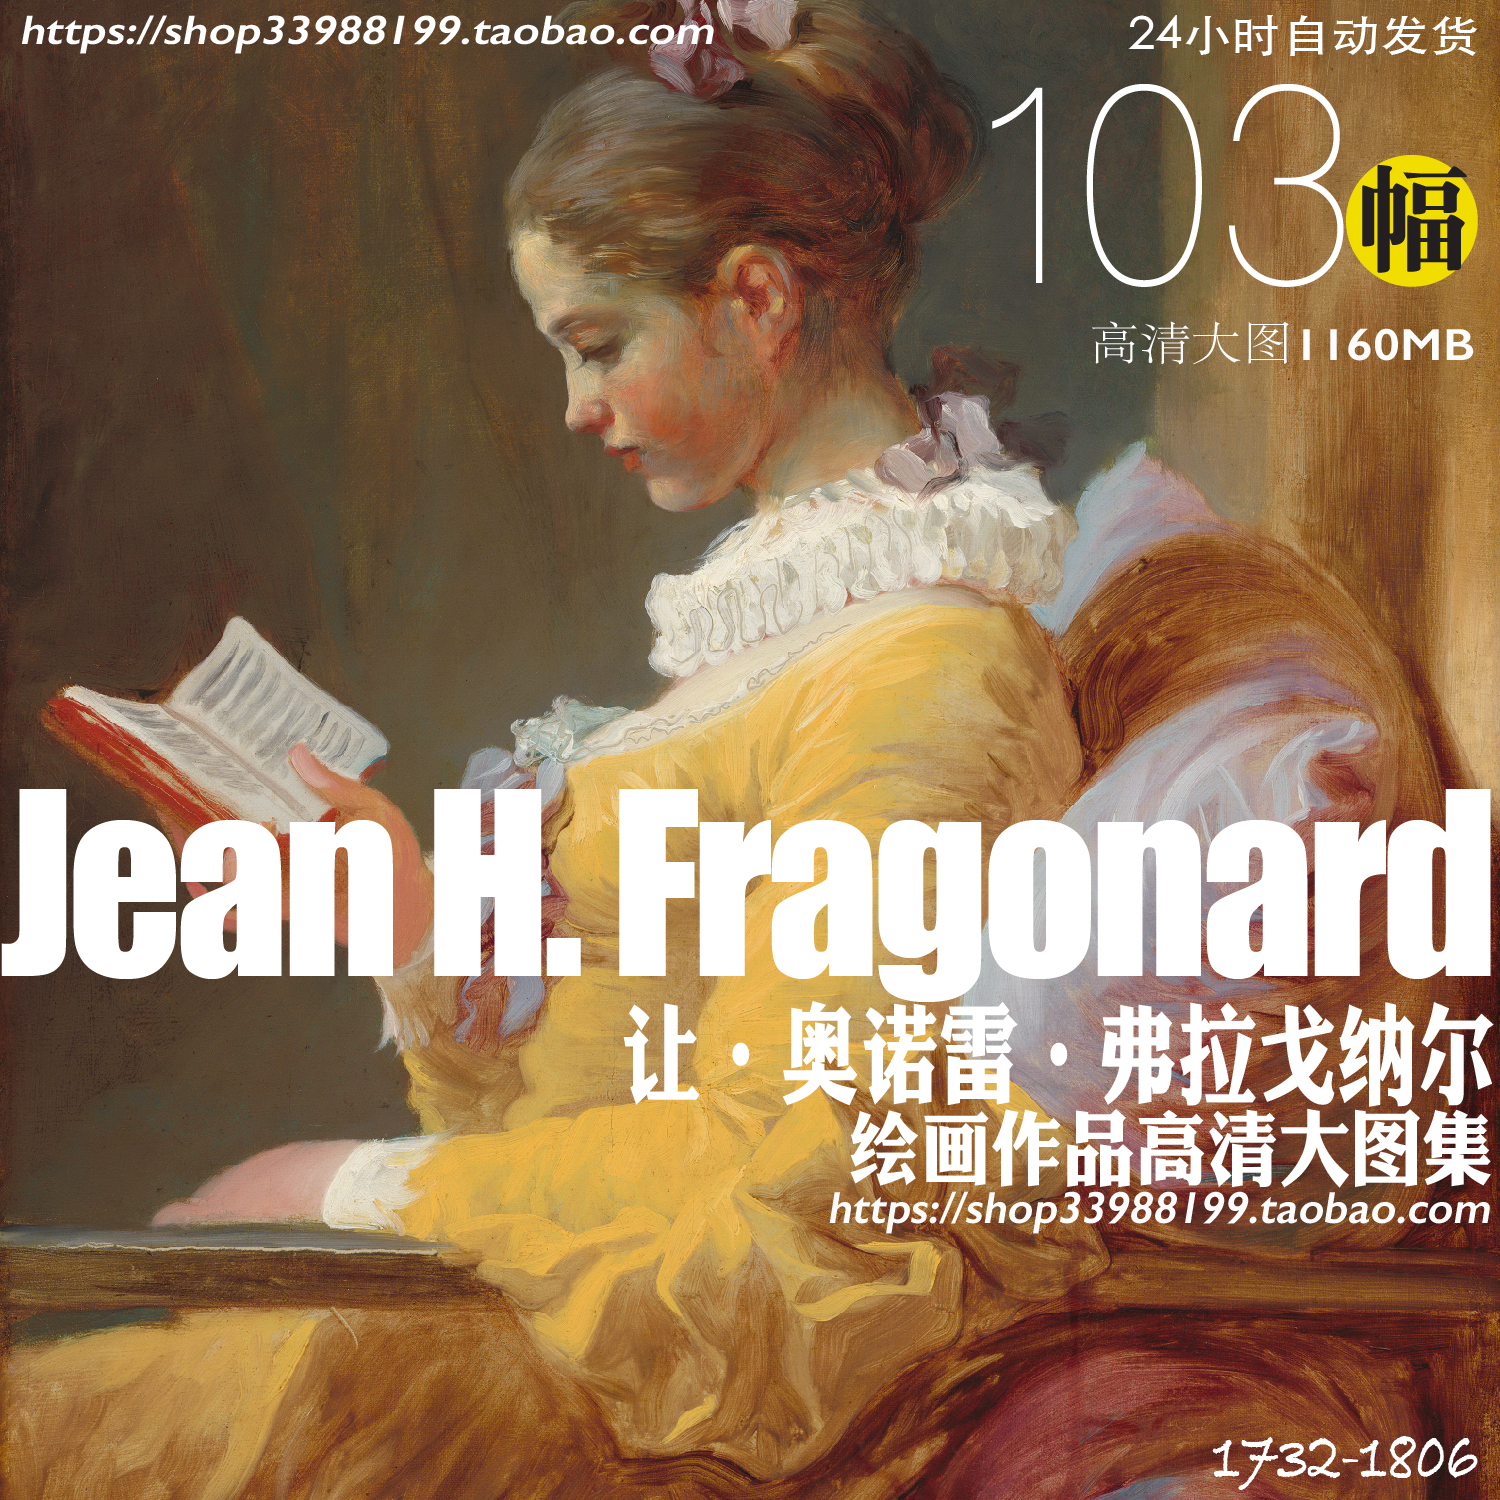 弗拉戈纳尔Jean Honore Fragonard 油画作品洛可可高清大图素材